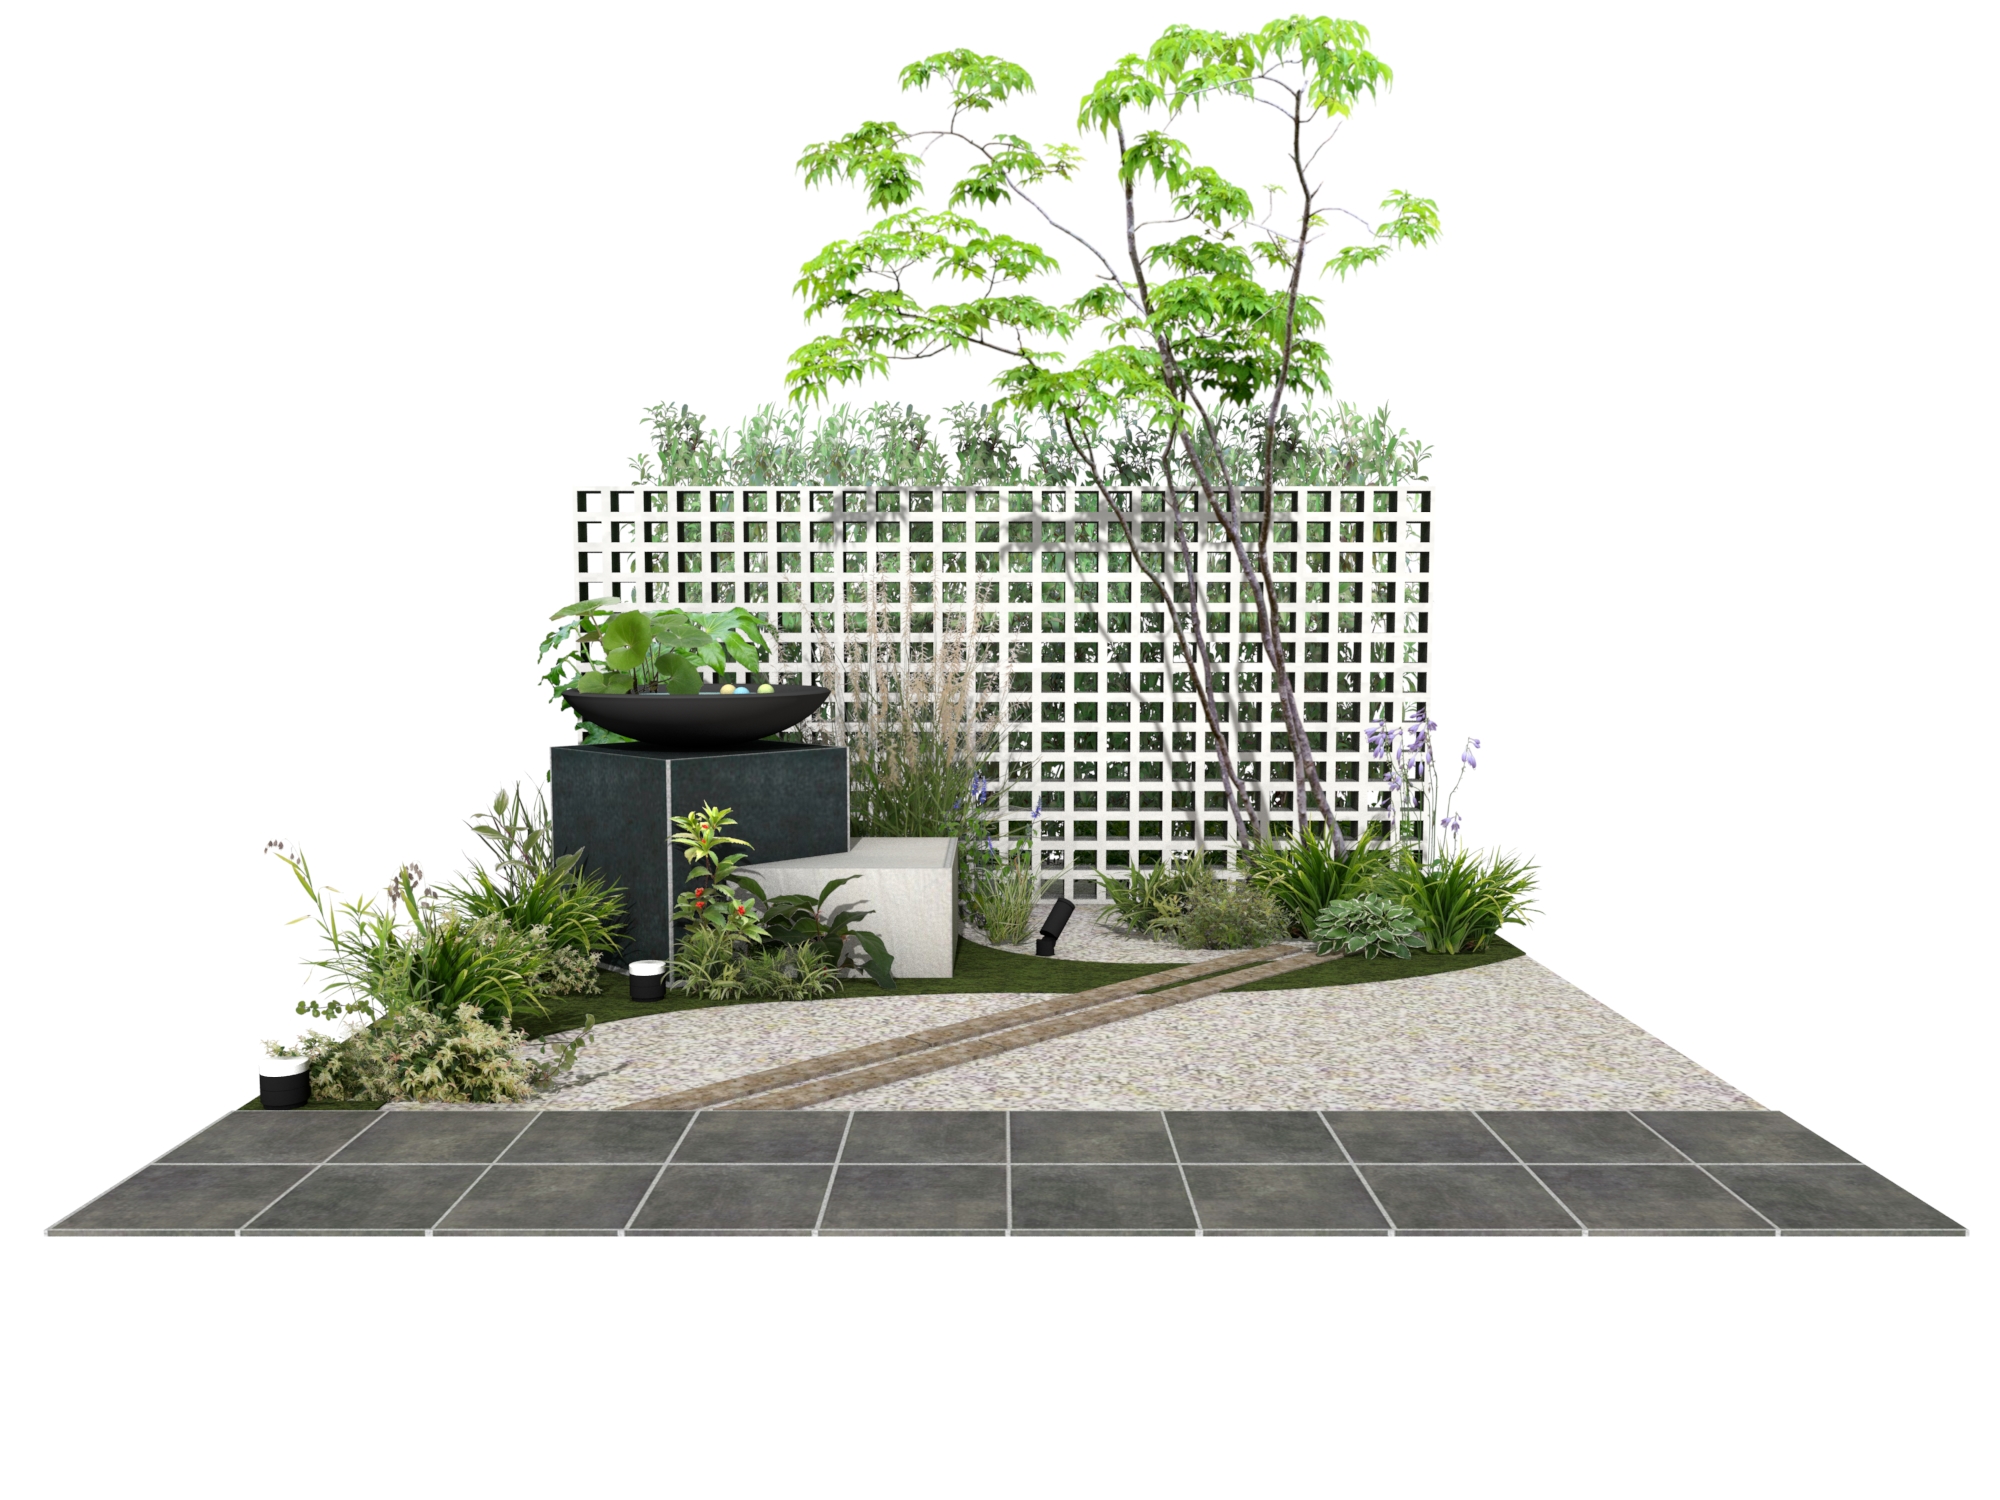 和モダンをイメージした坪庭 エクスプラット エクステリア ガーデンデザイン プラン検索サイト Rikcadデータ無料配信